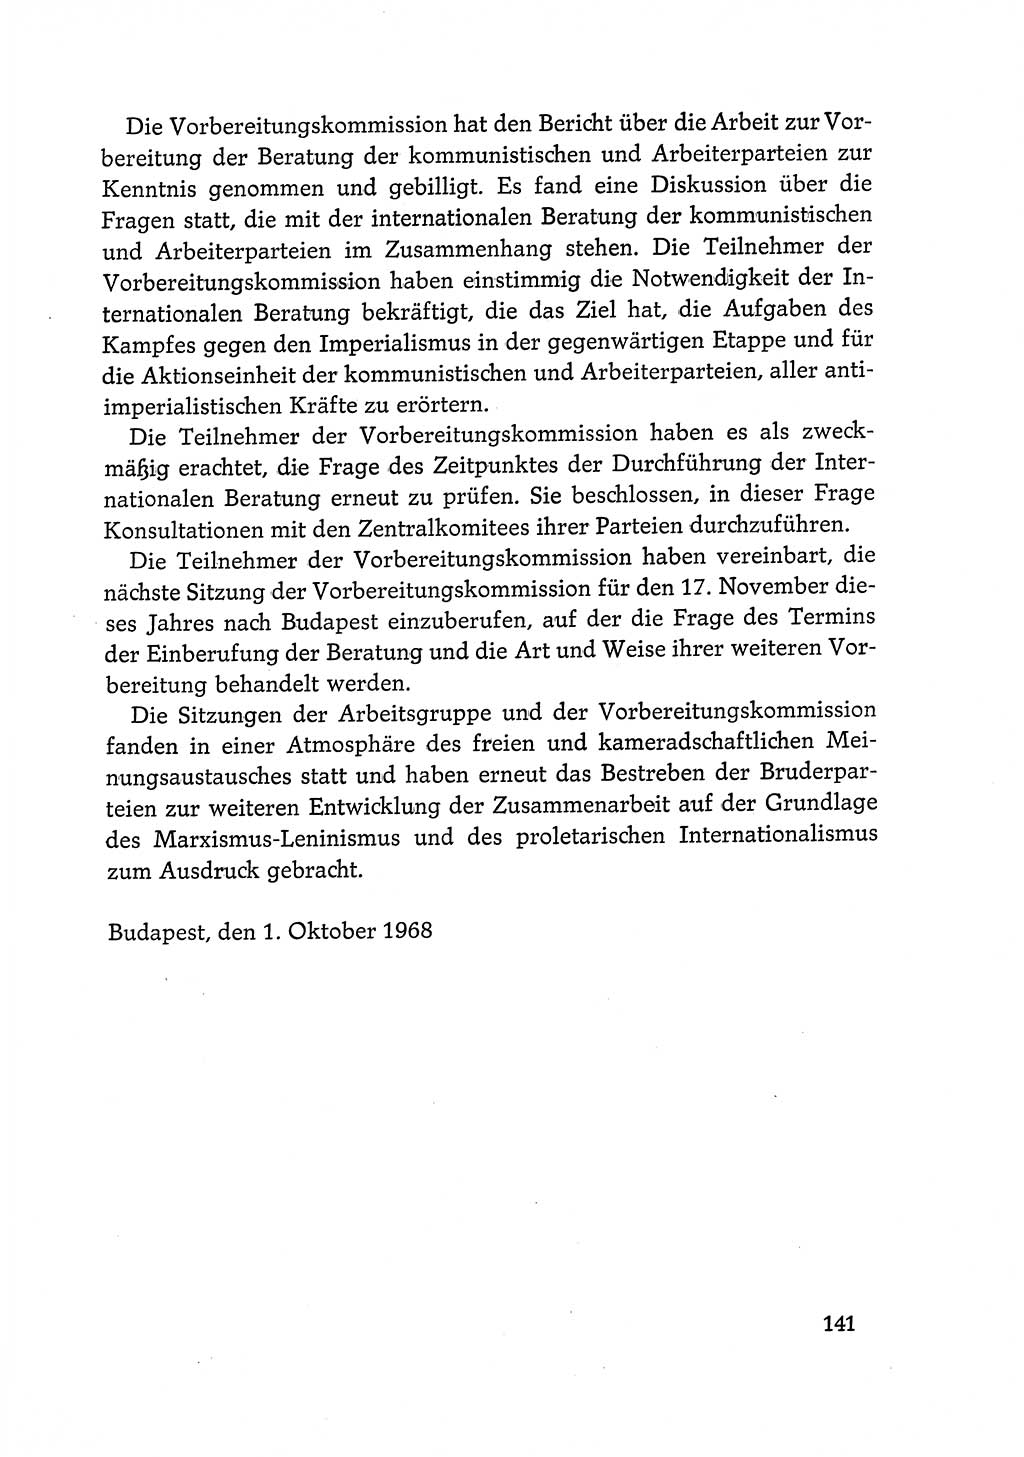 Dokumente der Sozialistischen Einheitspartei Deutschlands (SED) [Deutsche Demokratische Republik (DDR)] 1968-1969, Seite 141 (Dok. SED DDR 1968-1969, S. 141)